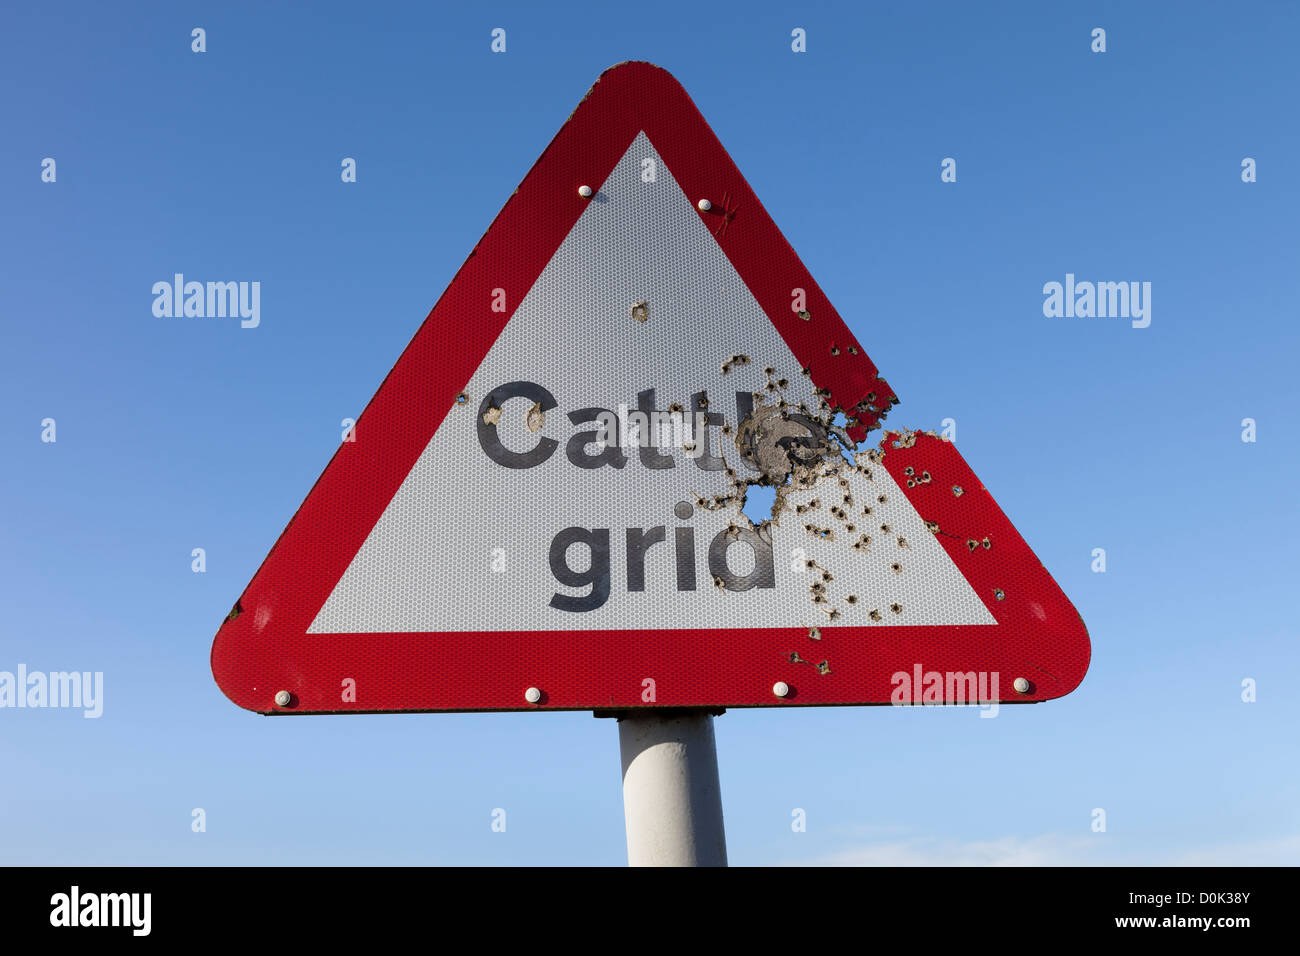 Cattle Grid Road Sign Damaged by Shotgun Pellets UK Stock Photo